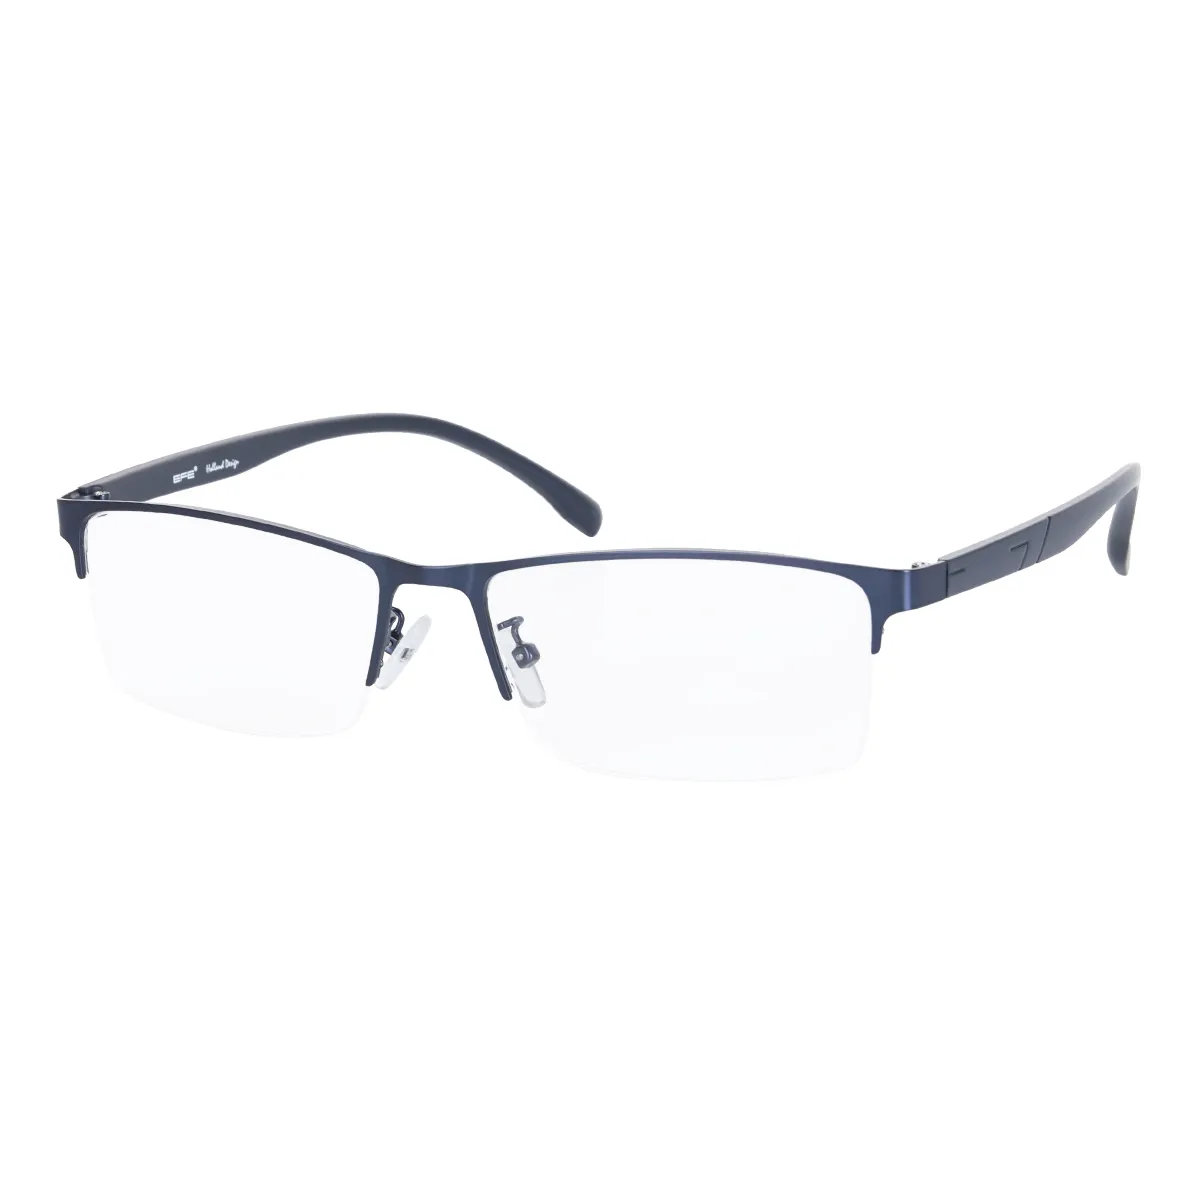 Frank - Rectangle Blue Glasses for Men